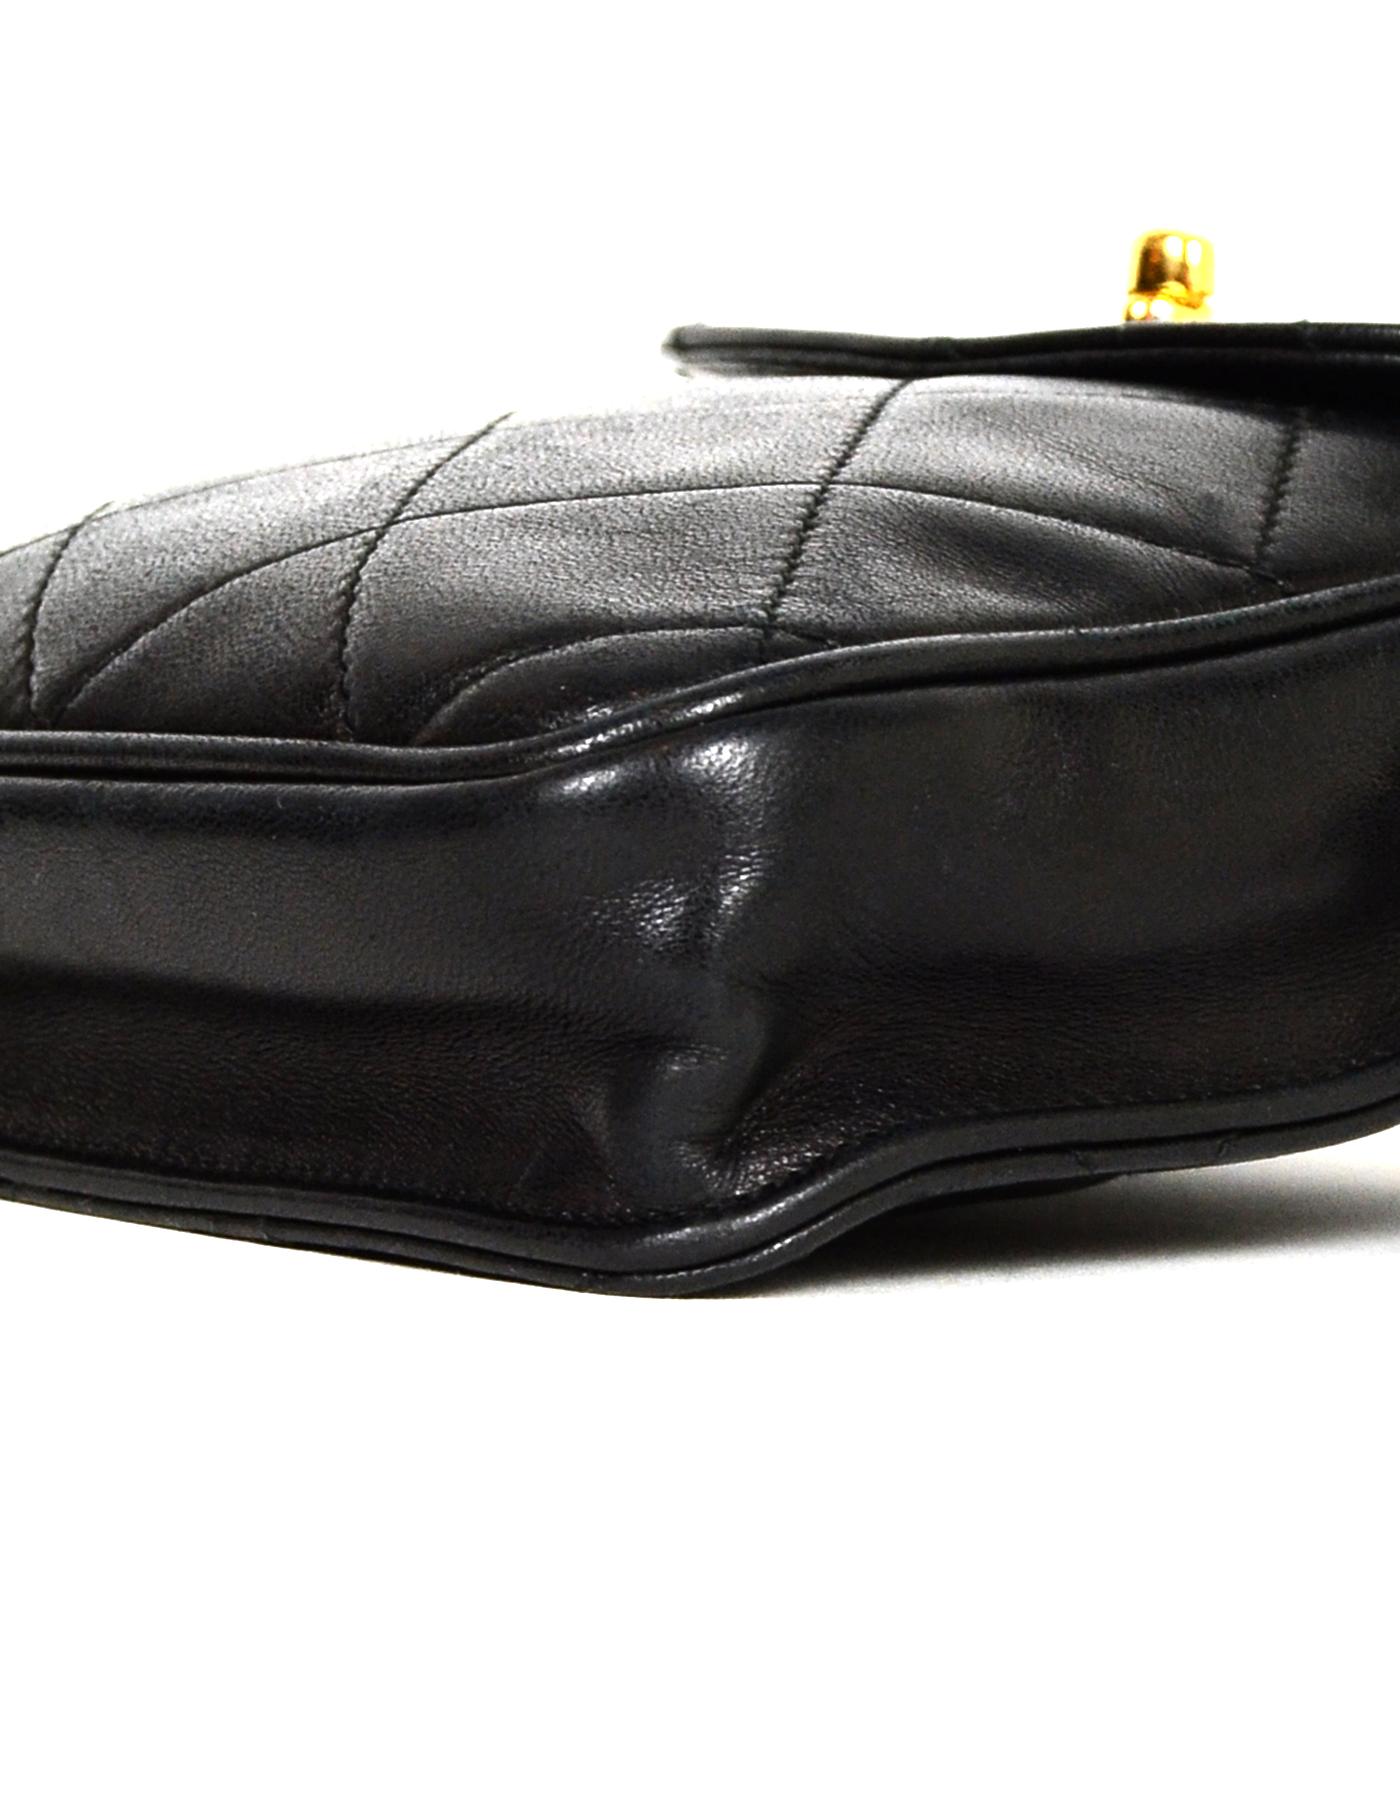 vintage chanel belt bag